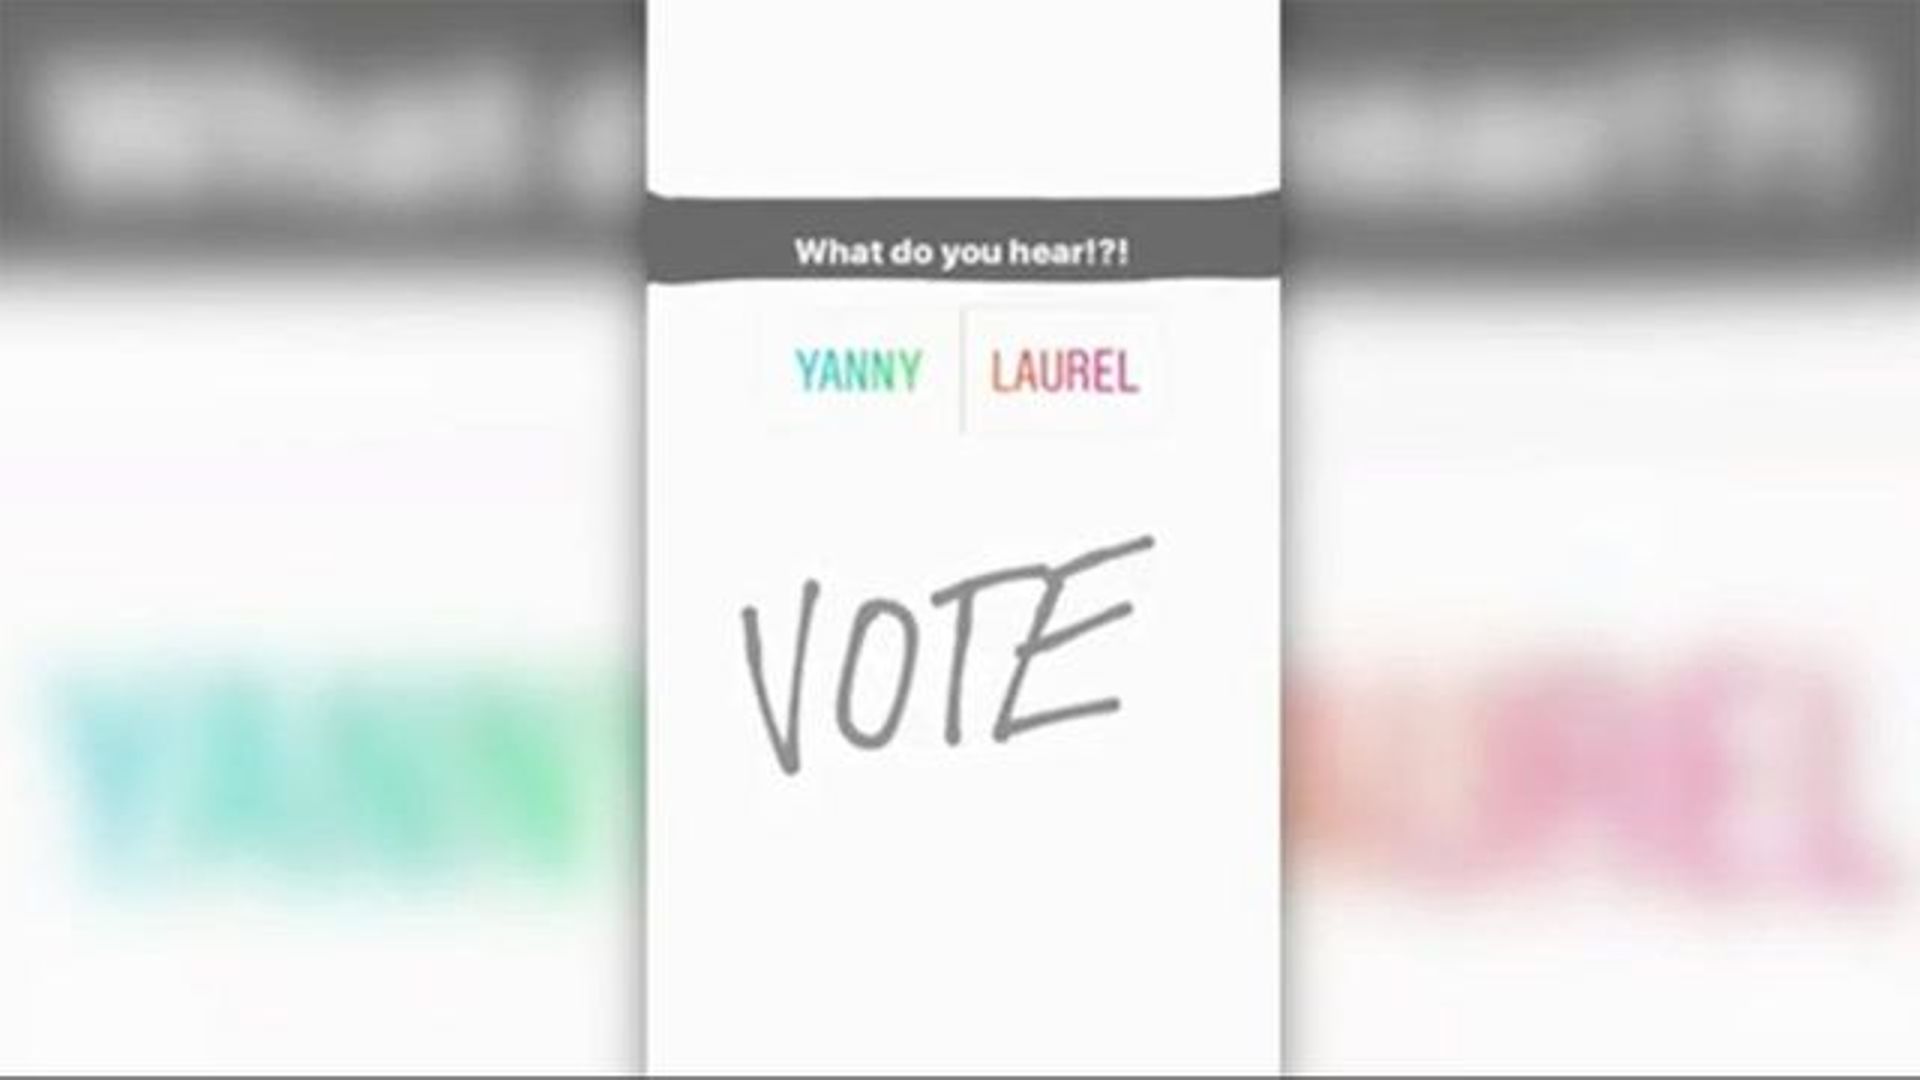 Et vous? Vous entendez Yanny ou Laurel?